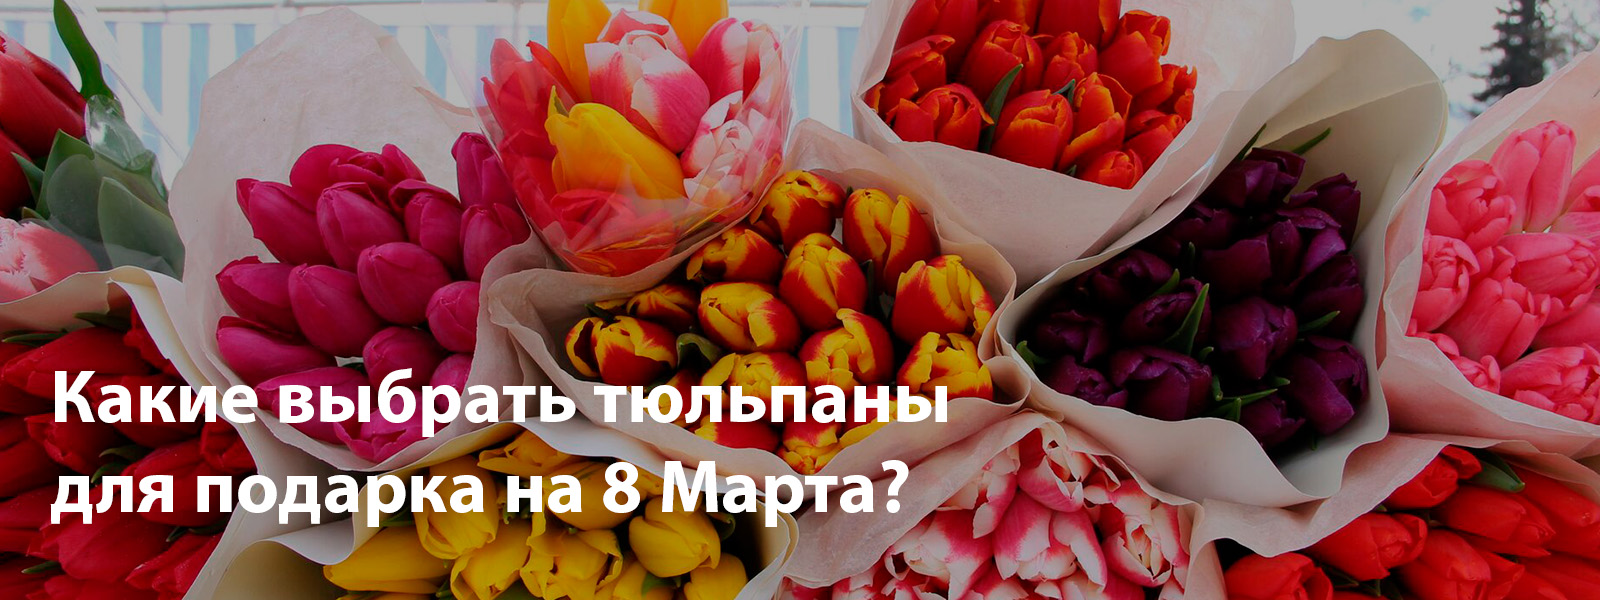 Какие выбрать тюльпаны для подарка на 8 Марта?